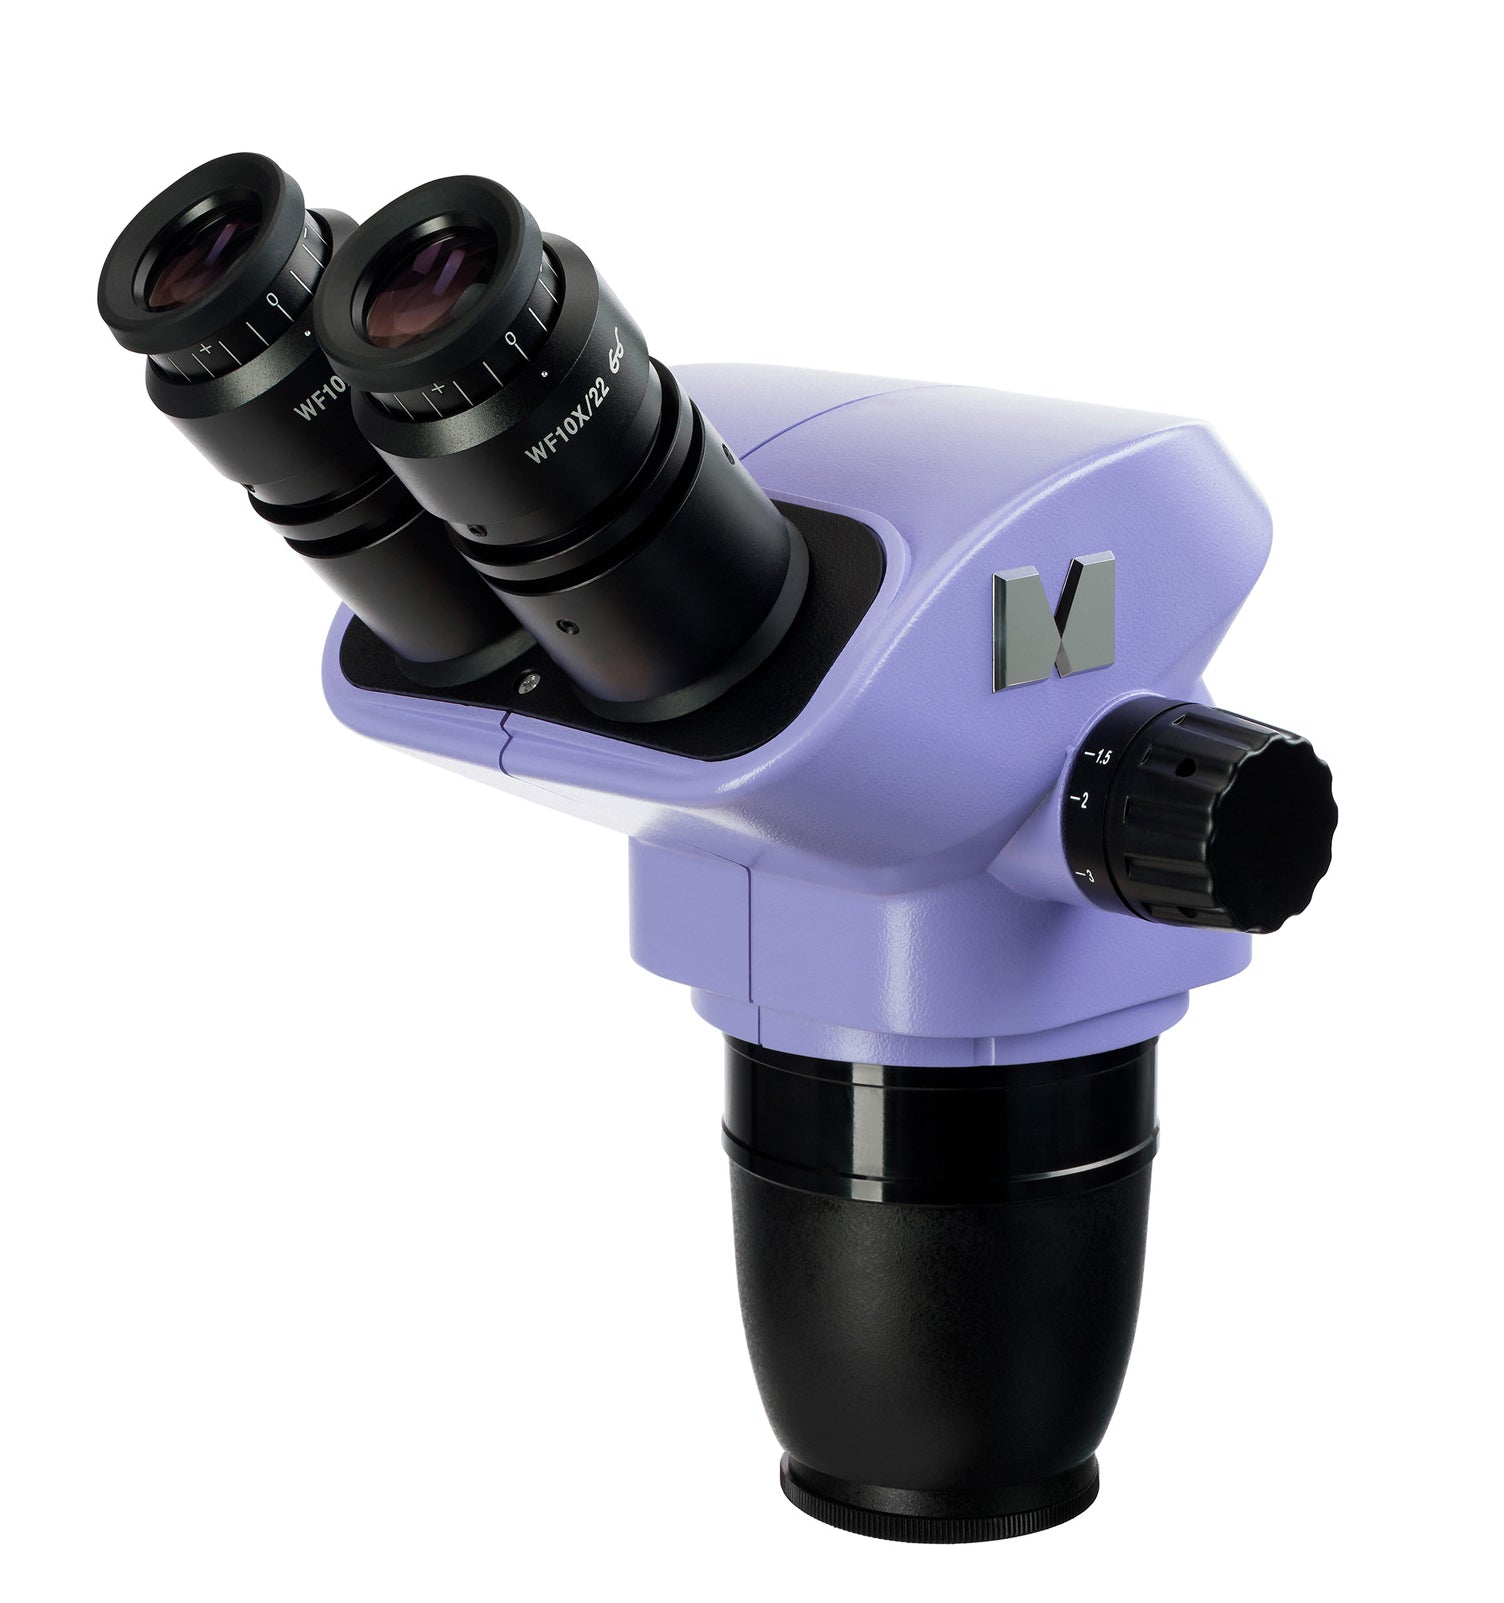 Testata del microscopio MAGUS Stereo 7BH